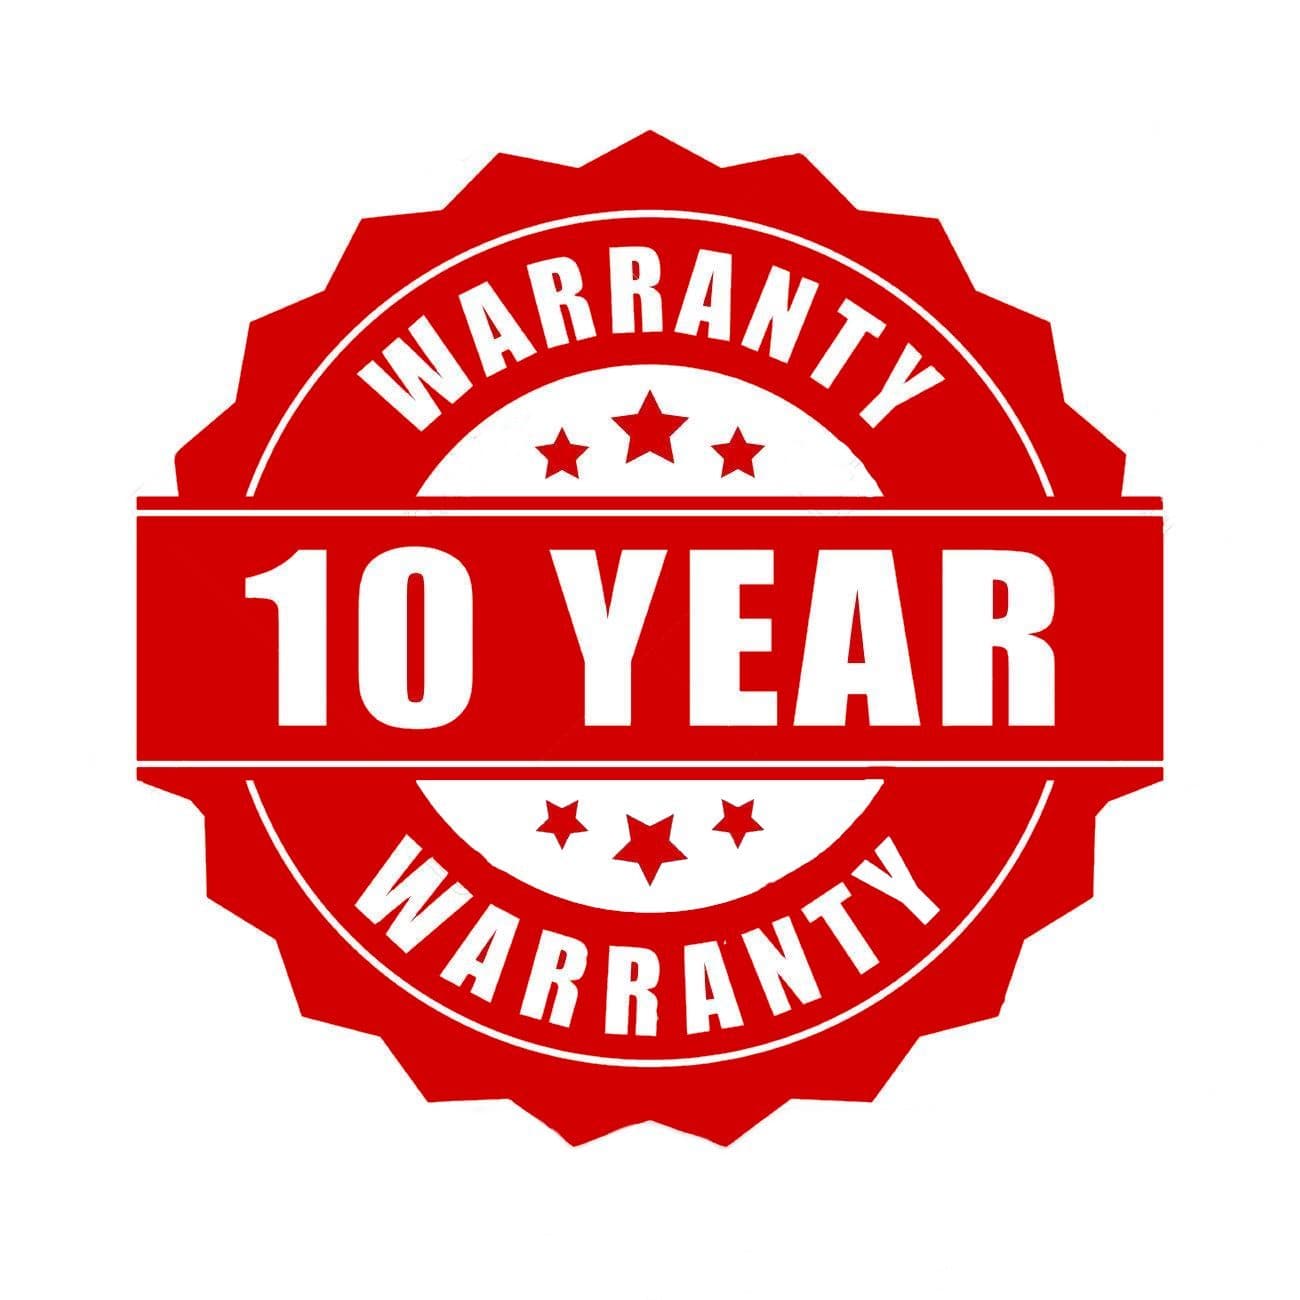 Daniel Steiger 10 Year Watch Warranty